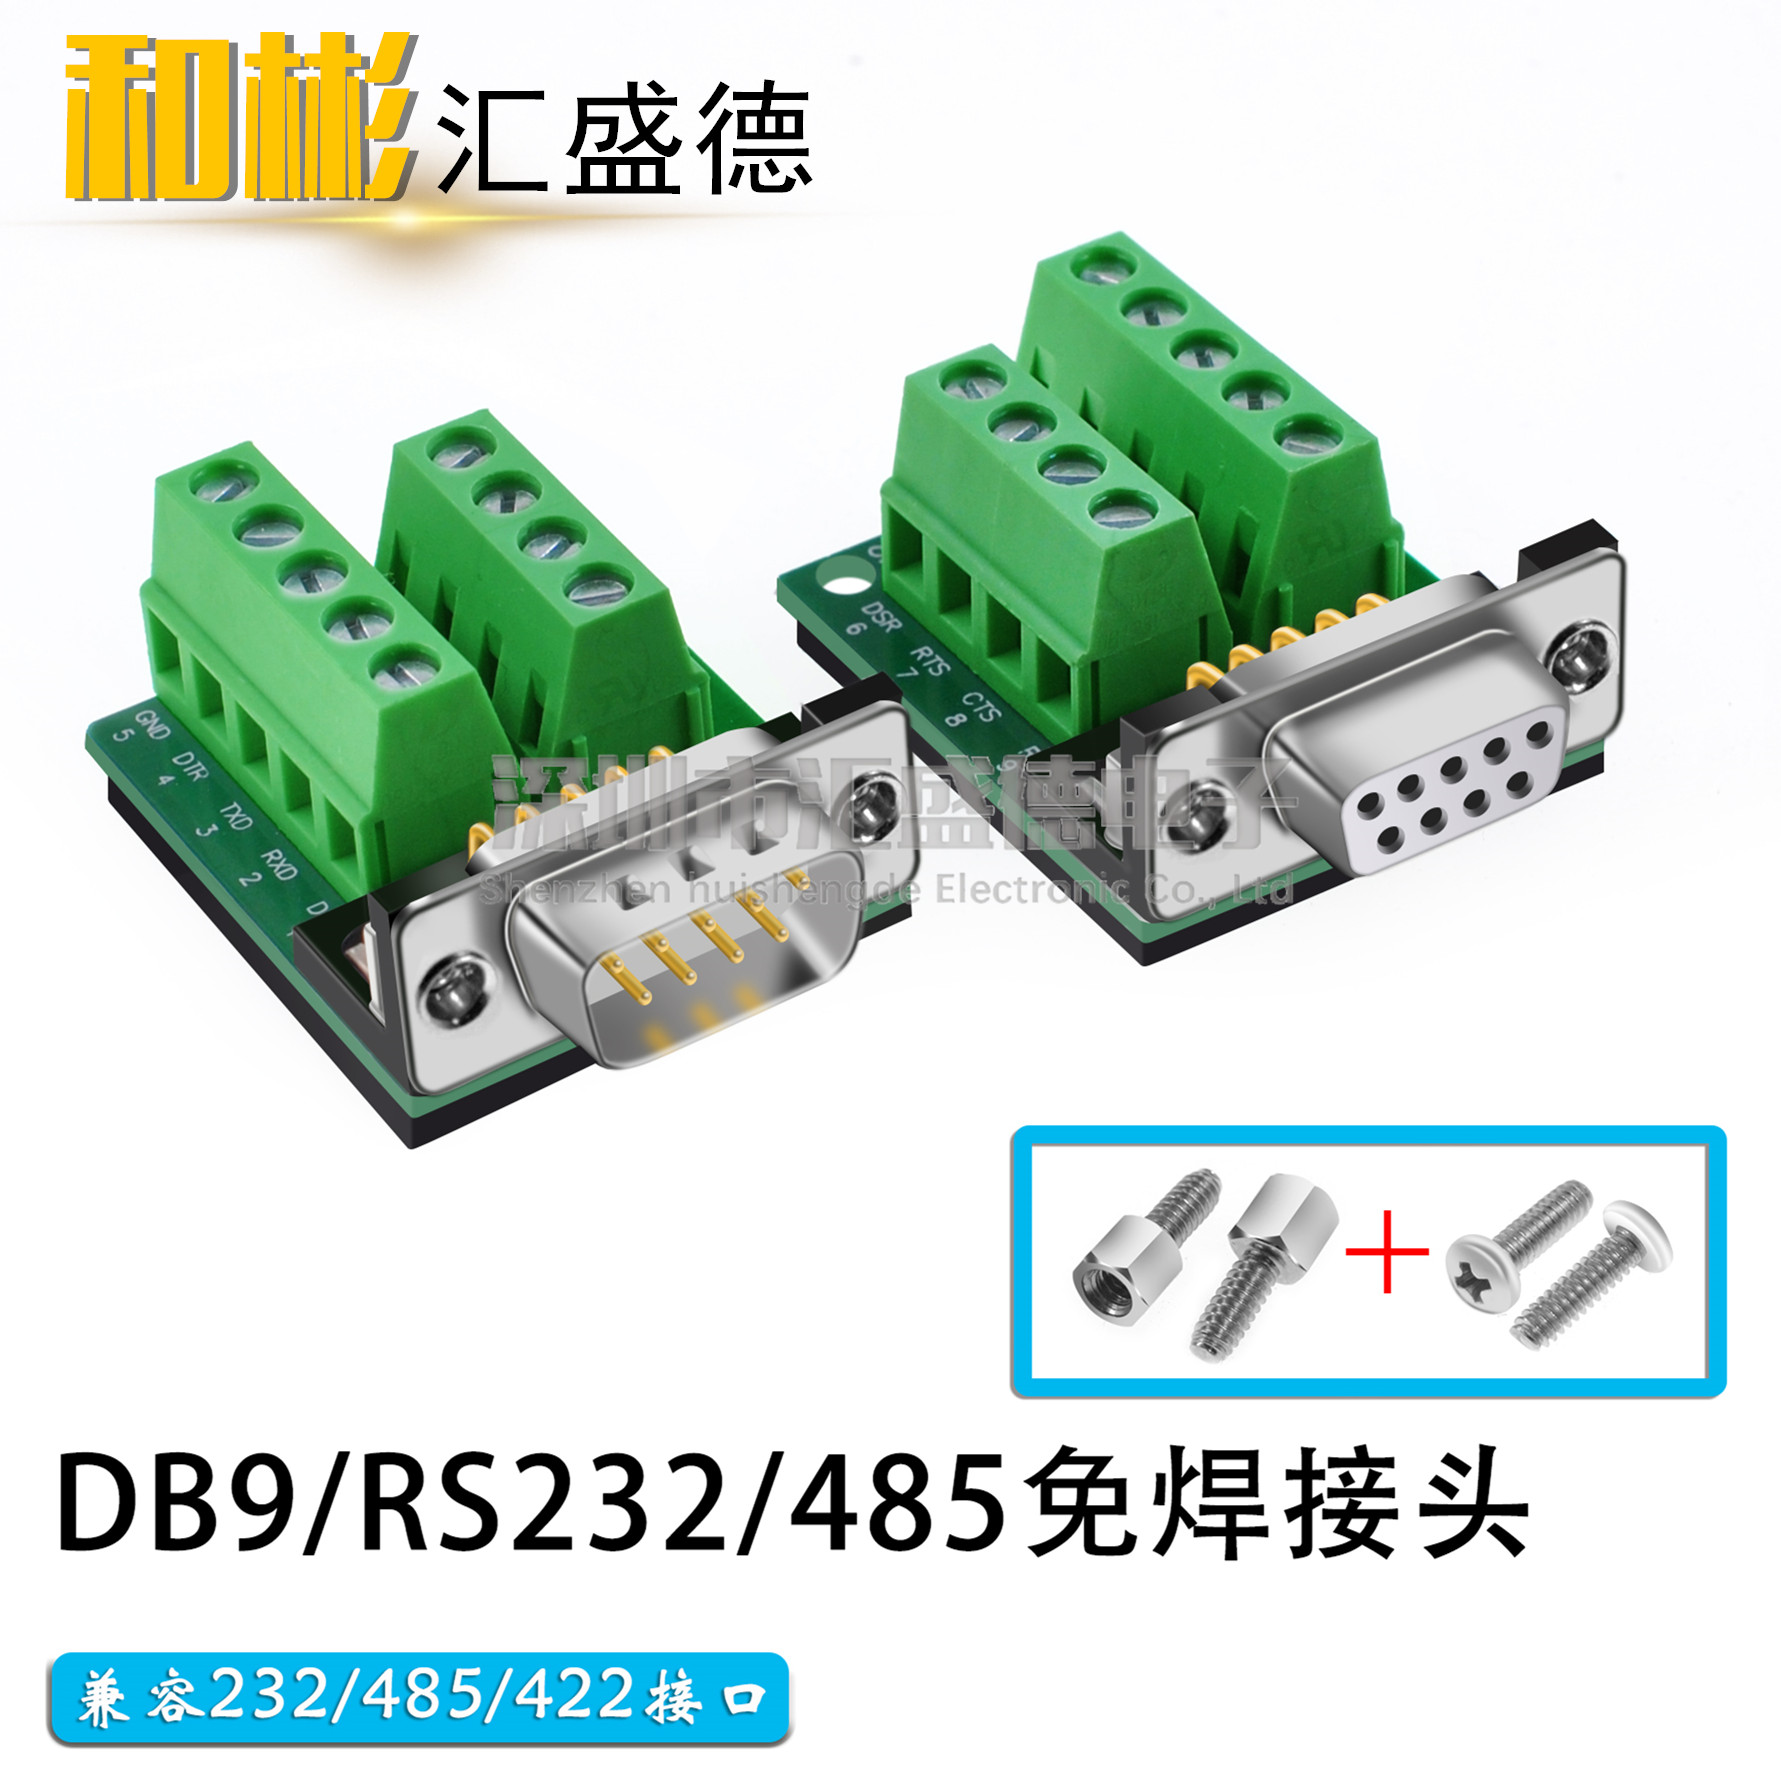 DB9-M2-G2 DR9转接板 232串口转接线端子 接线柱 免焊串口 公母头